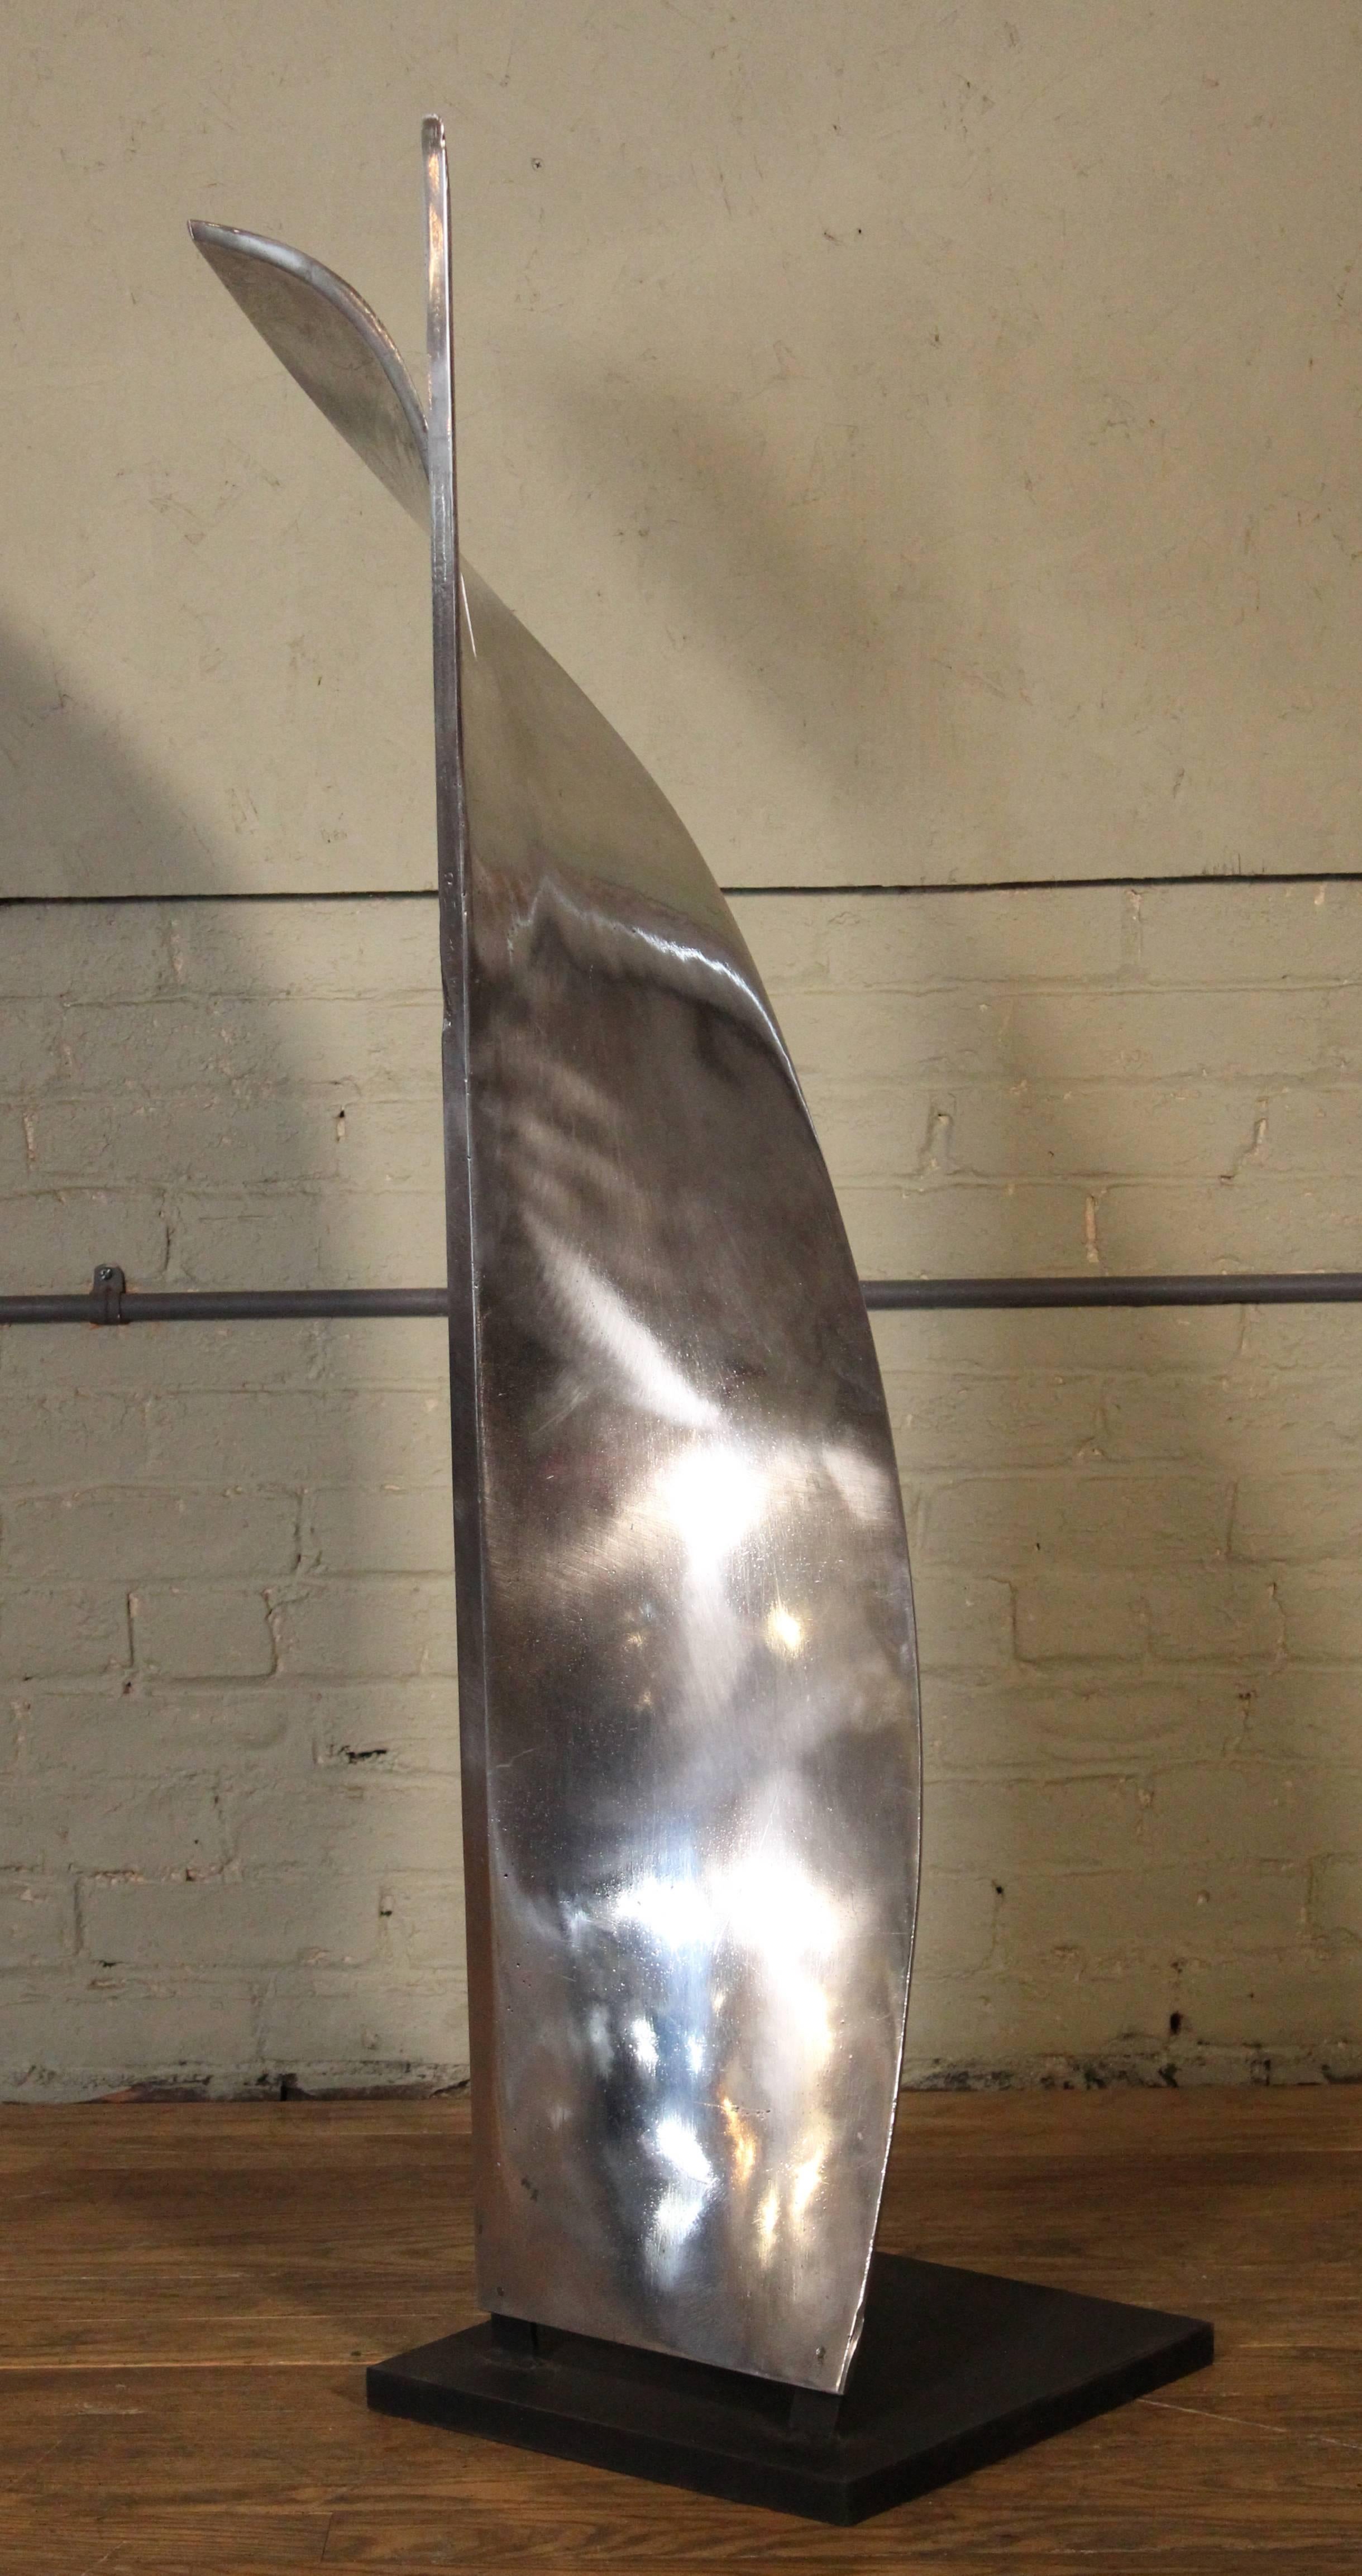 Aluminium-Papier-Mischklinge Skulptur Modell II. Kompletter Satz von drei Stück erhältlich. Aluminium auf Stahlsockel. Maße: 52